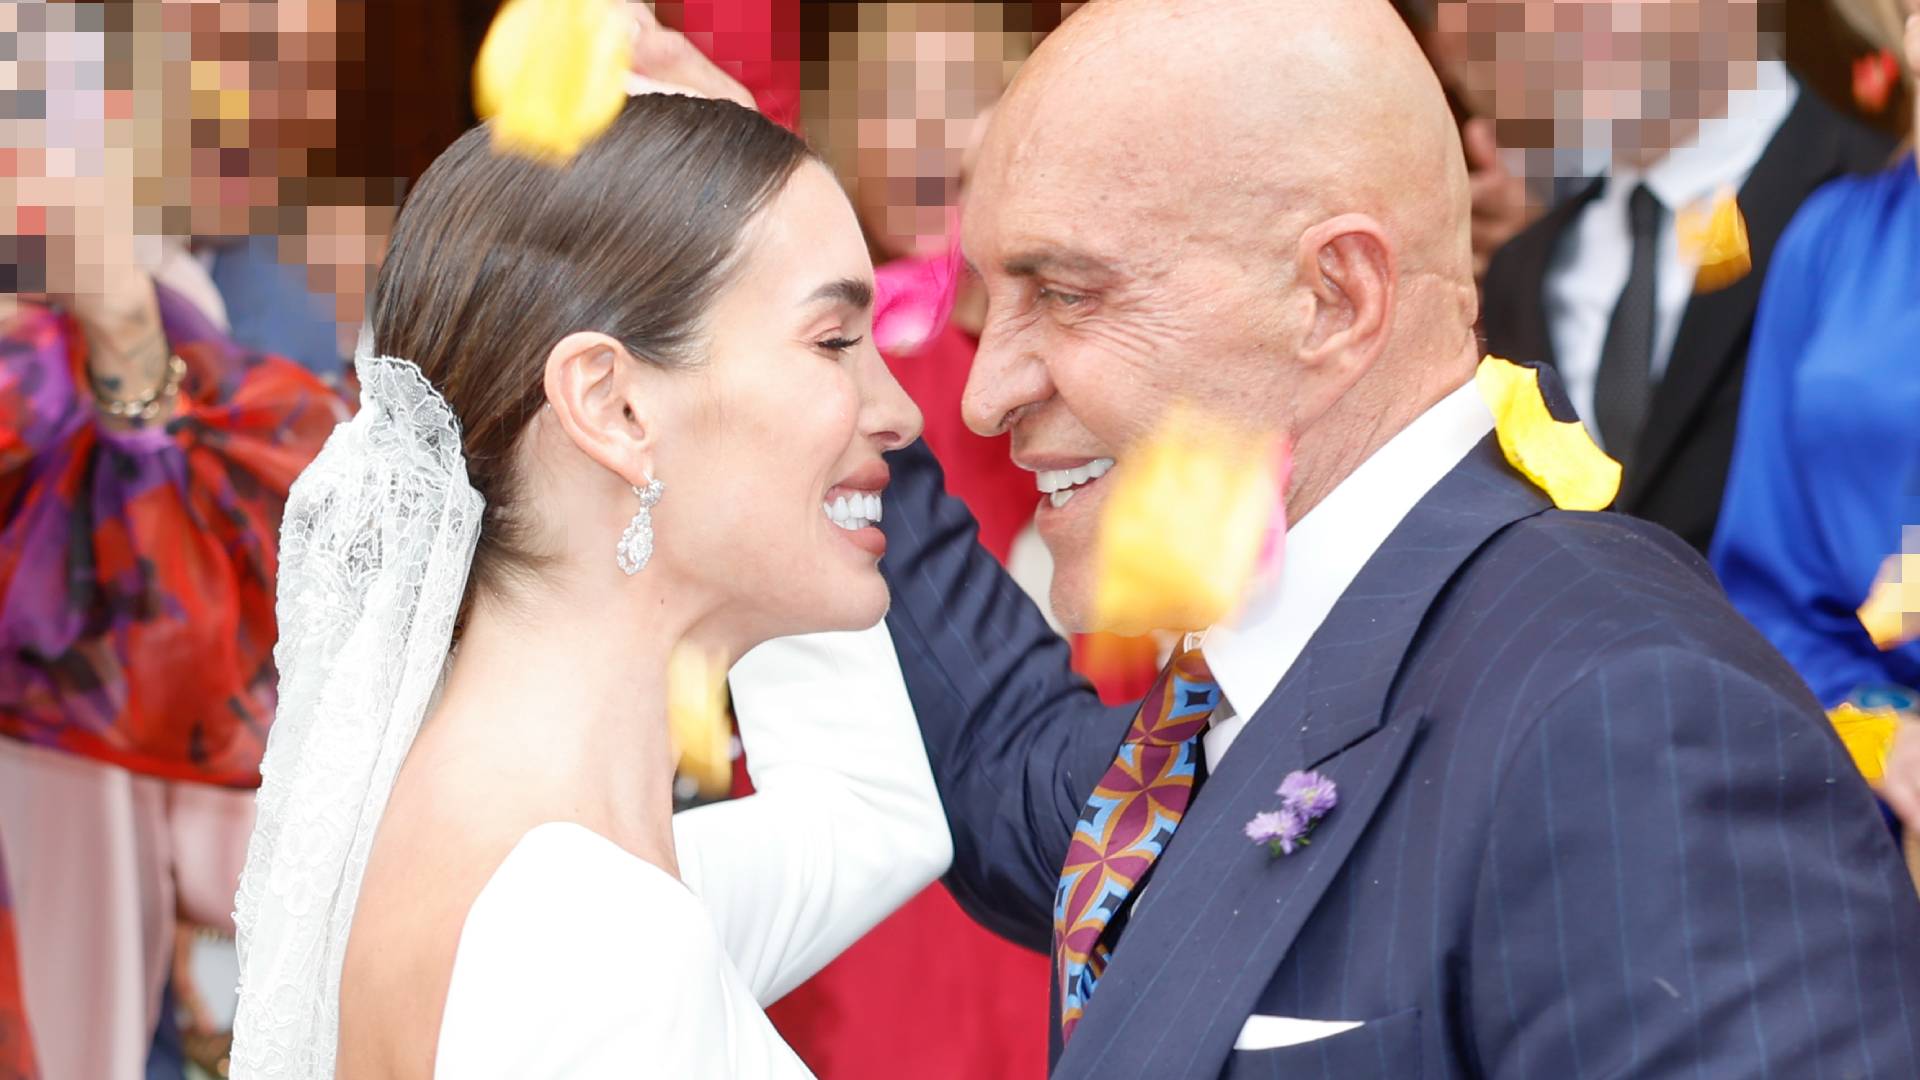 Rosa, suegra de Kiko Matamoros, se pronuncia tras la boda de su hija: 